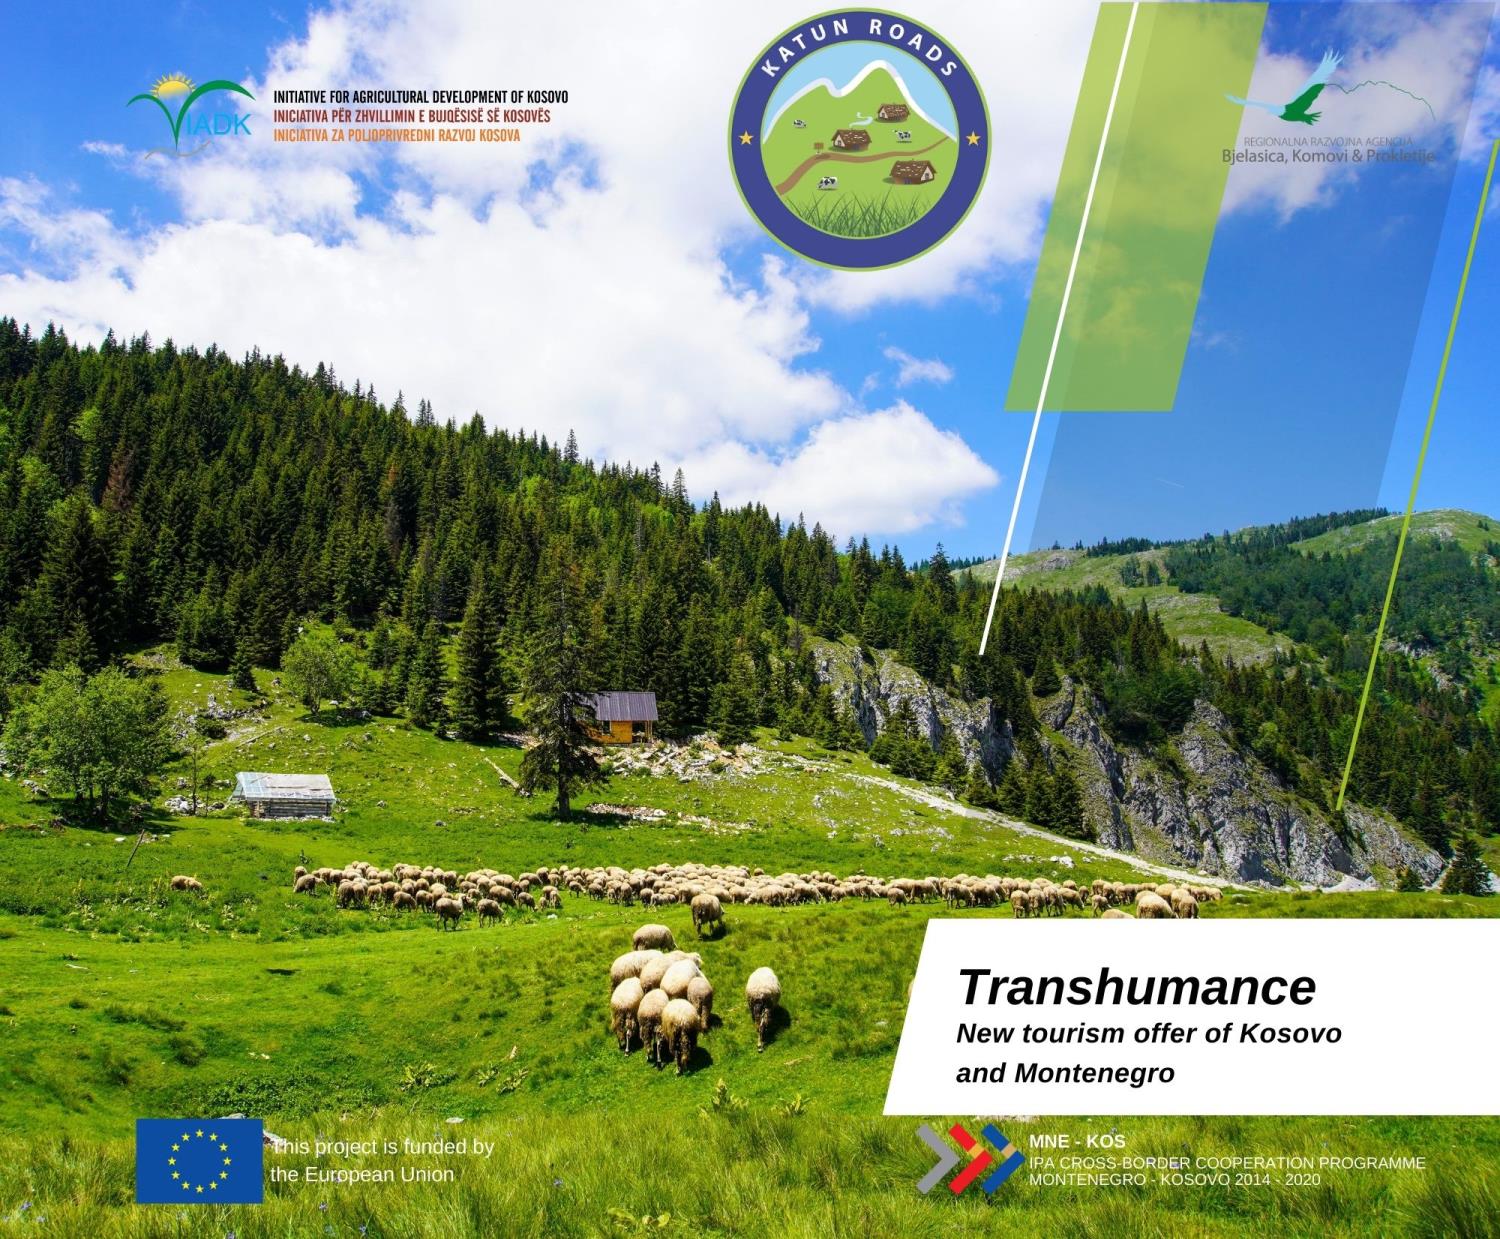 Mësoni më shumë rreth ofertës së re turistike Transhumanca në broshurën tonë promovuese